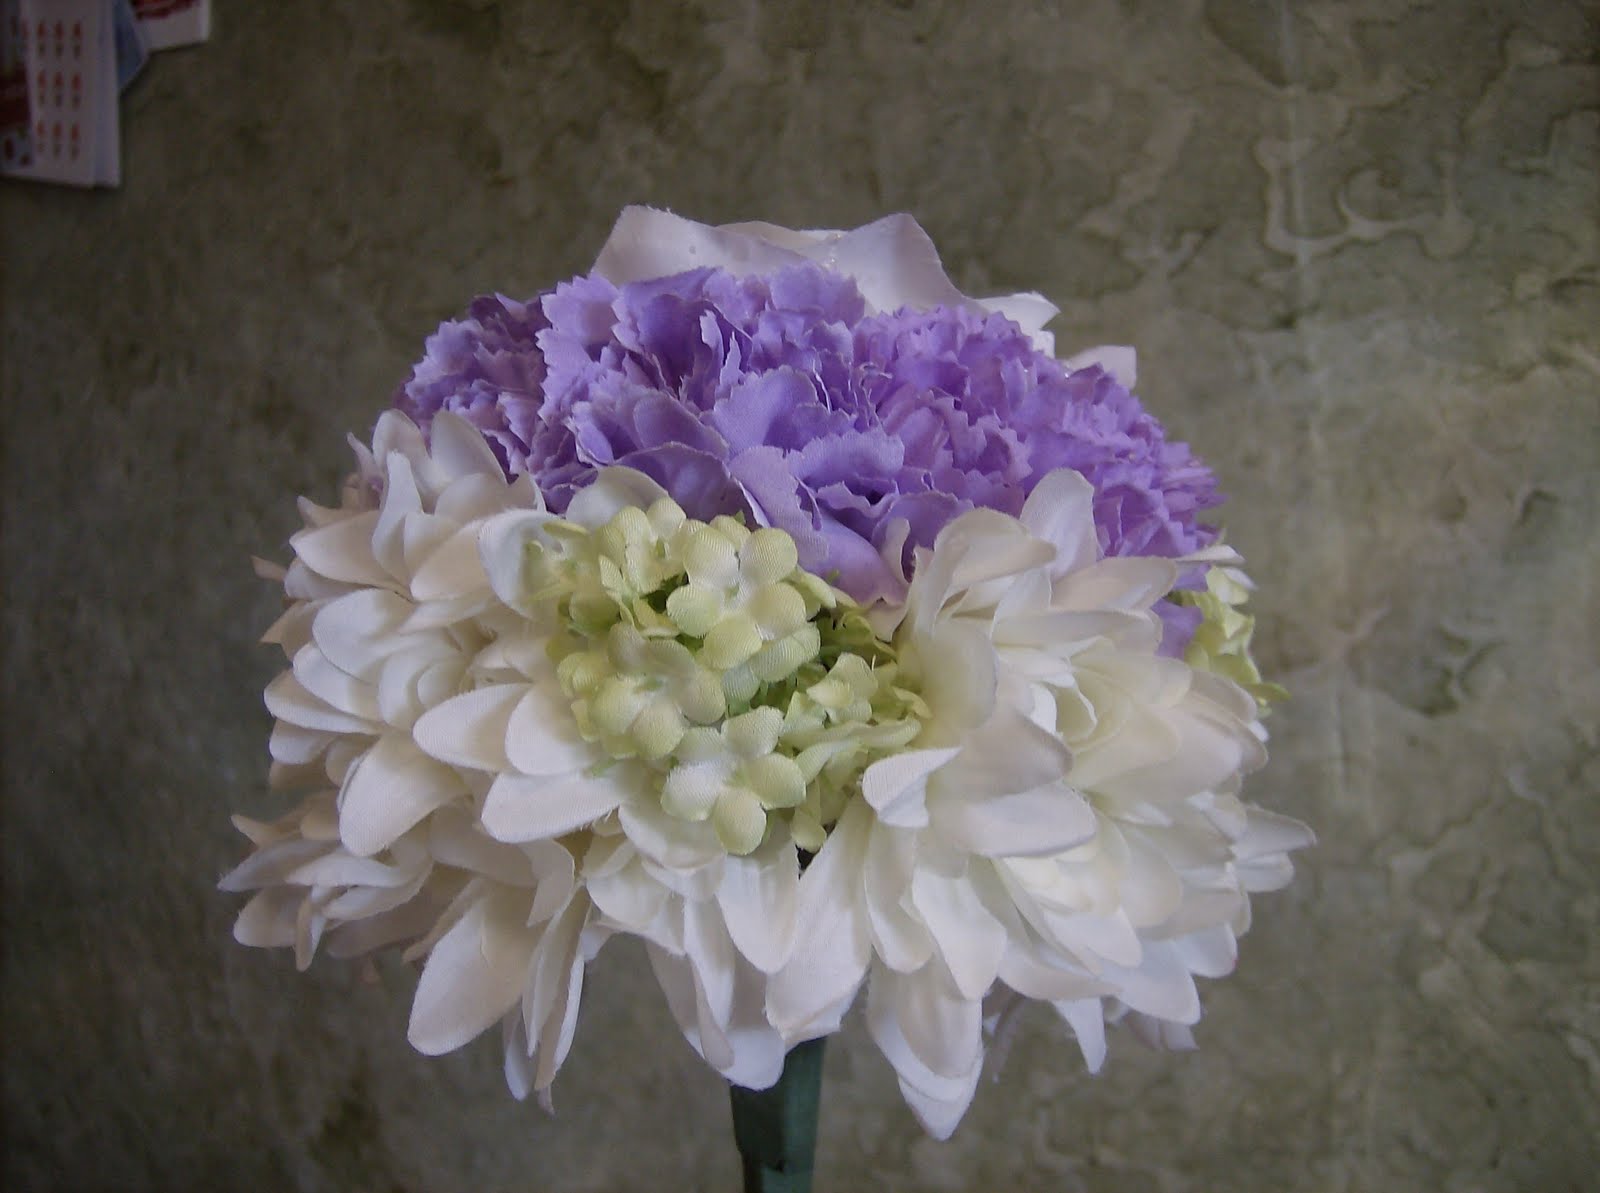 Easy DIY Bridal Bouquet